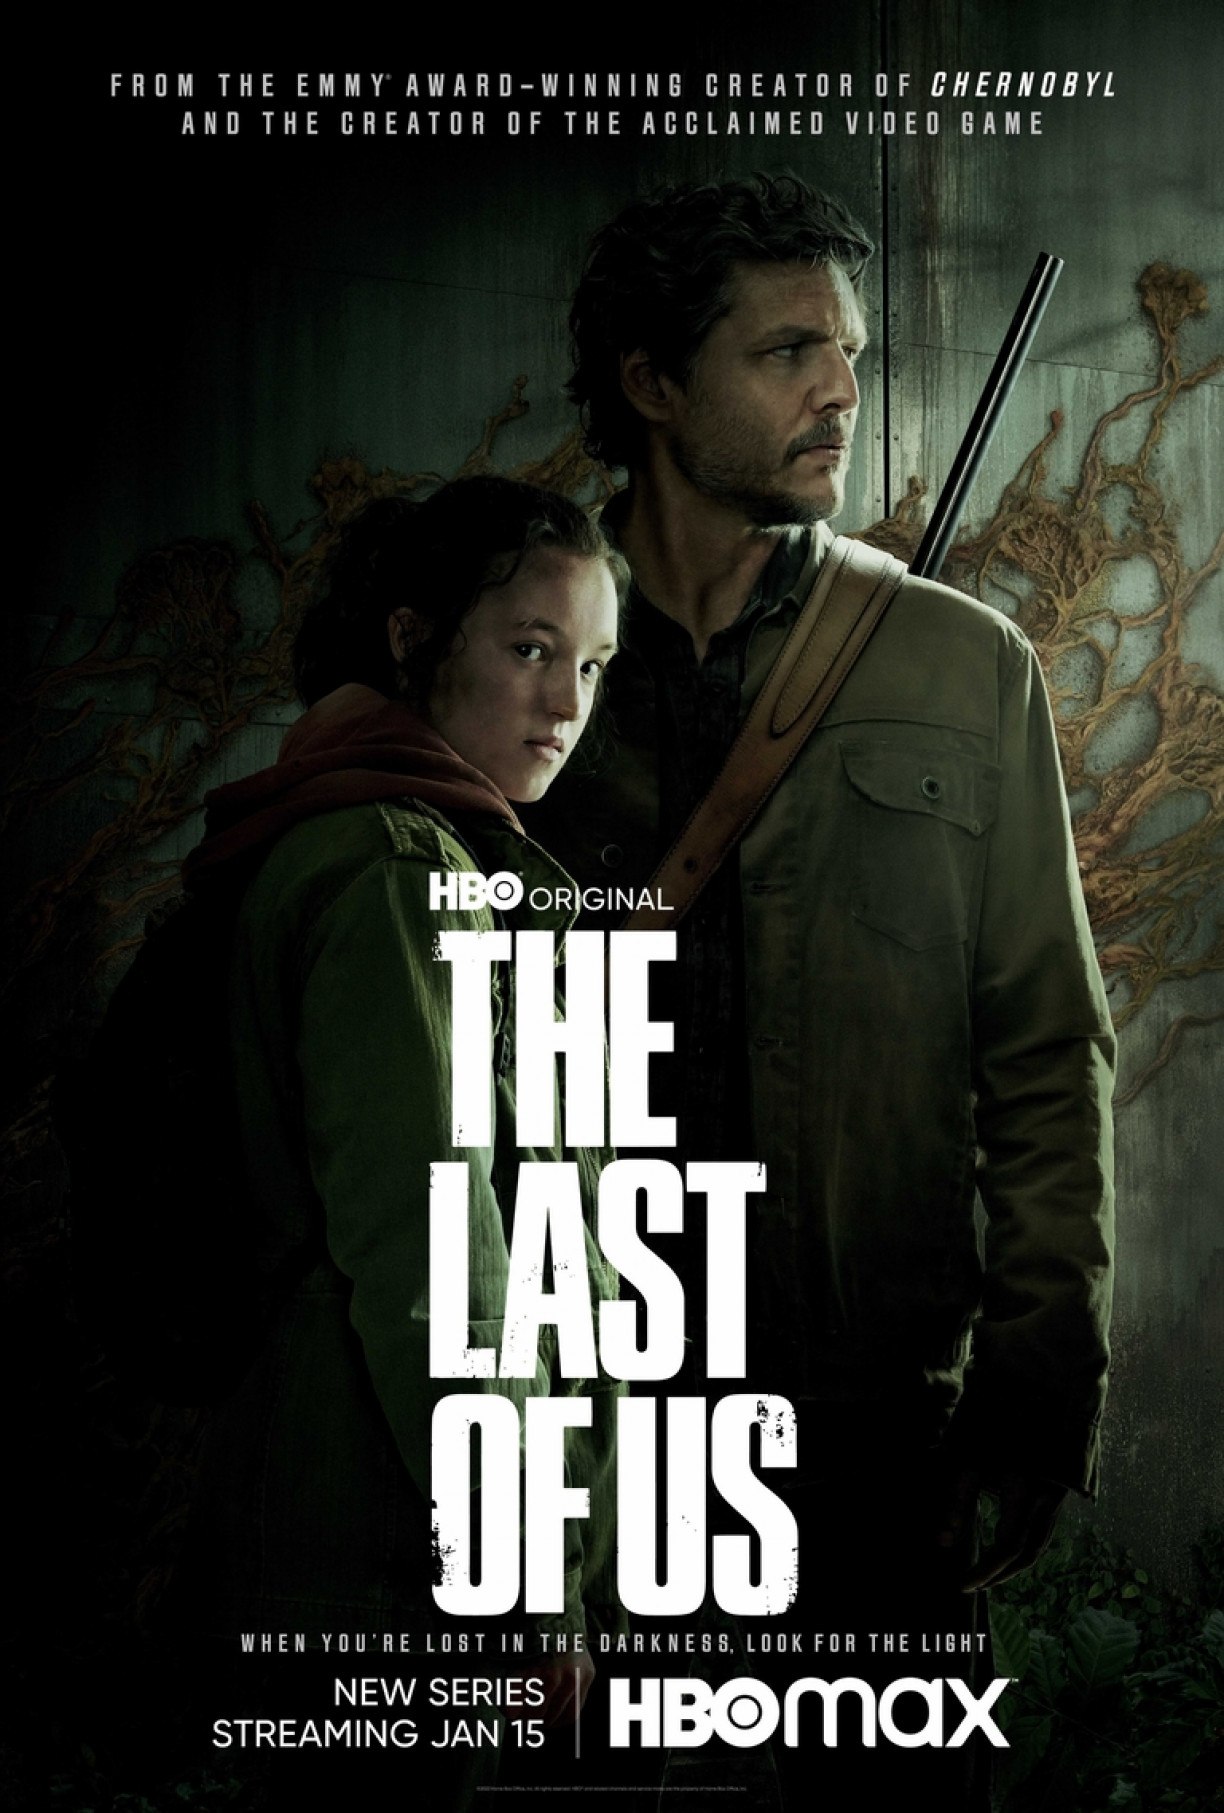 Estreia da série de The Last of Us passará em seis canais